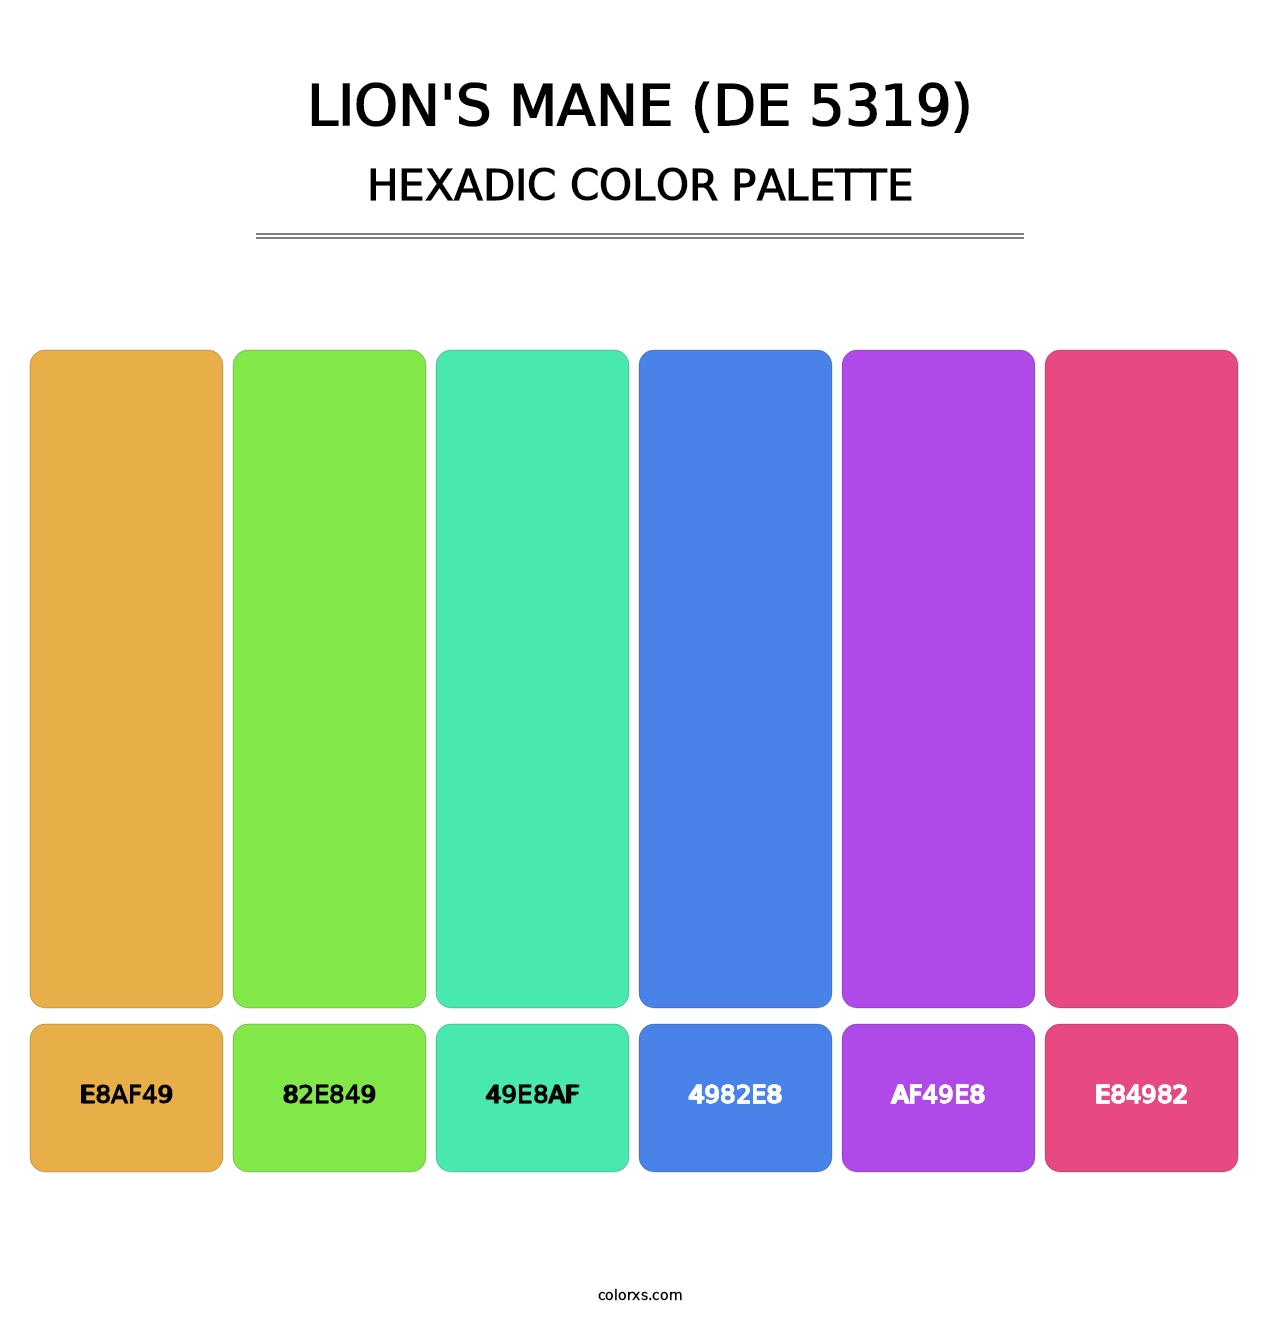 Lion's Mane (DE 5319) - Hexadic Color Palette